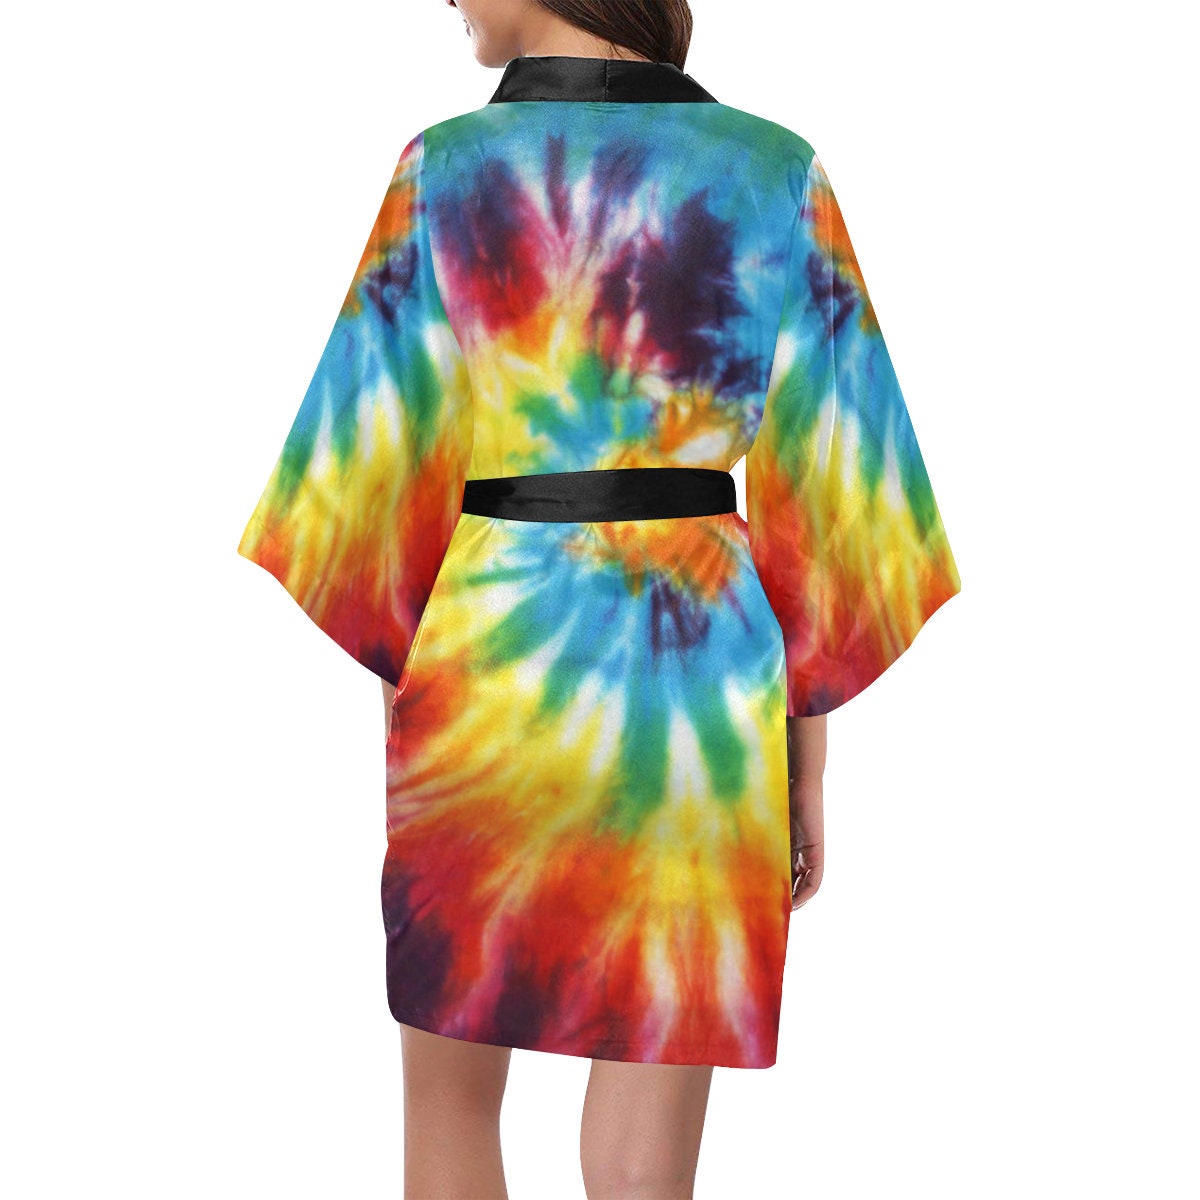 Kimono tie dye albornoz unisex Shibori Ropa Ropa de género neutro para adultos Pijamas y batas Batas kimono de rayón natural teñido a mano estilo Boho LE#09 chaqueta de playa holgada 